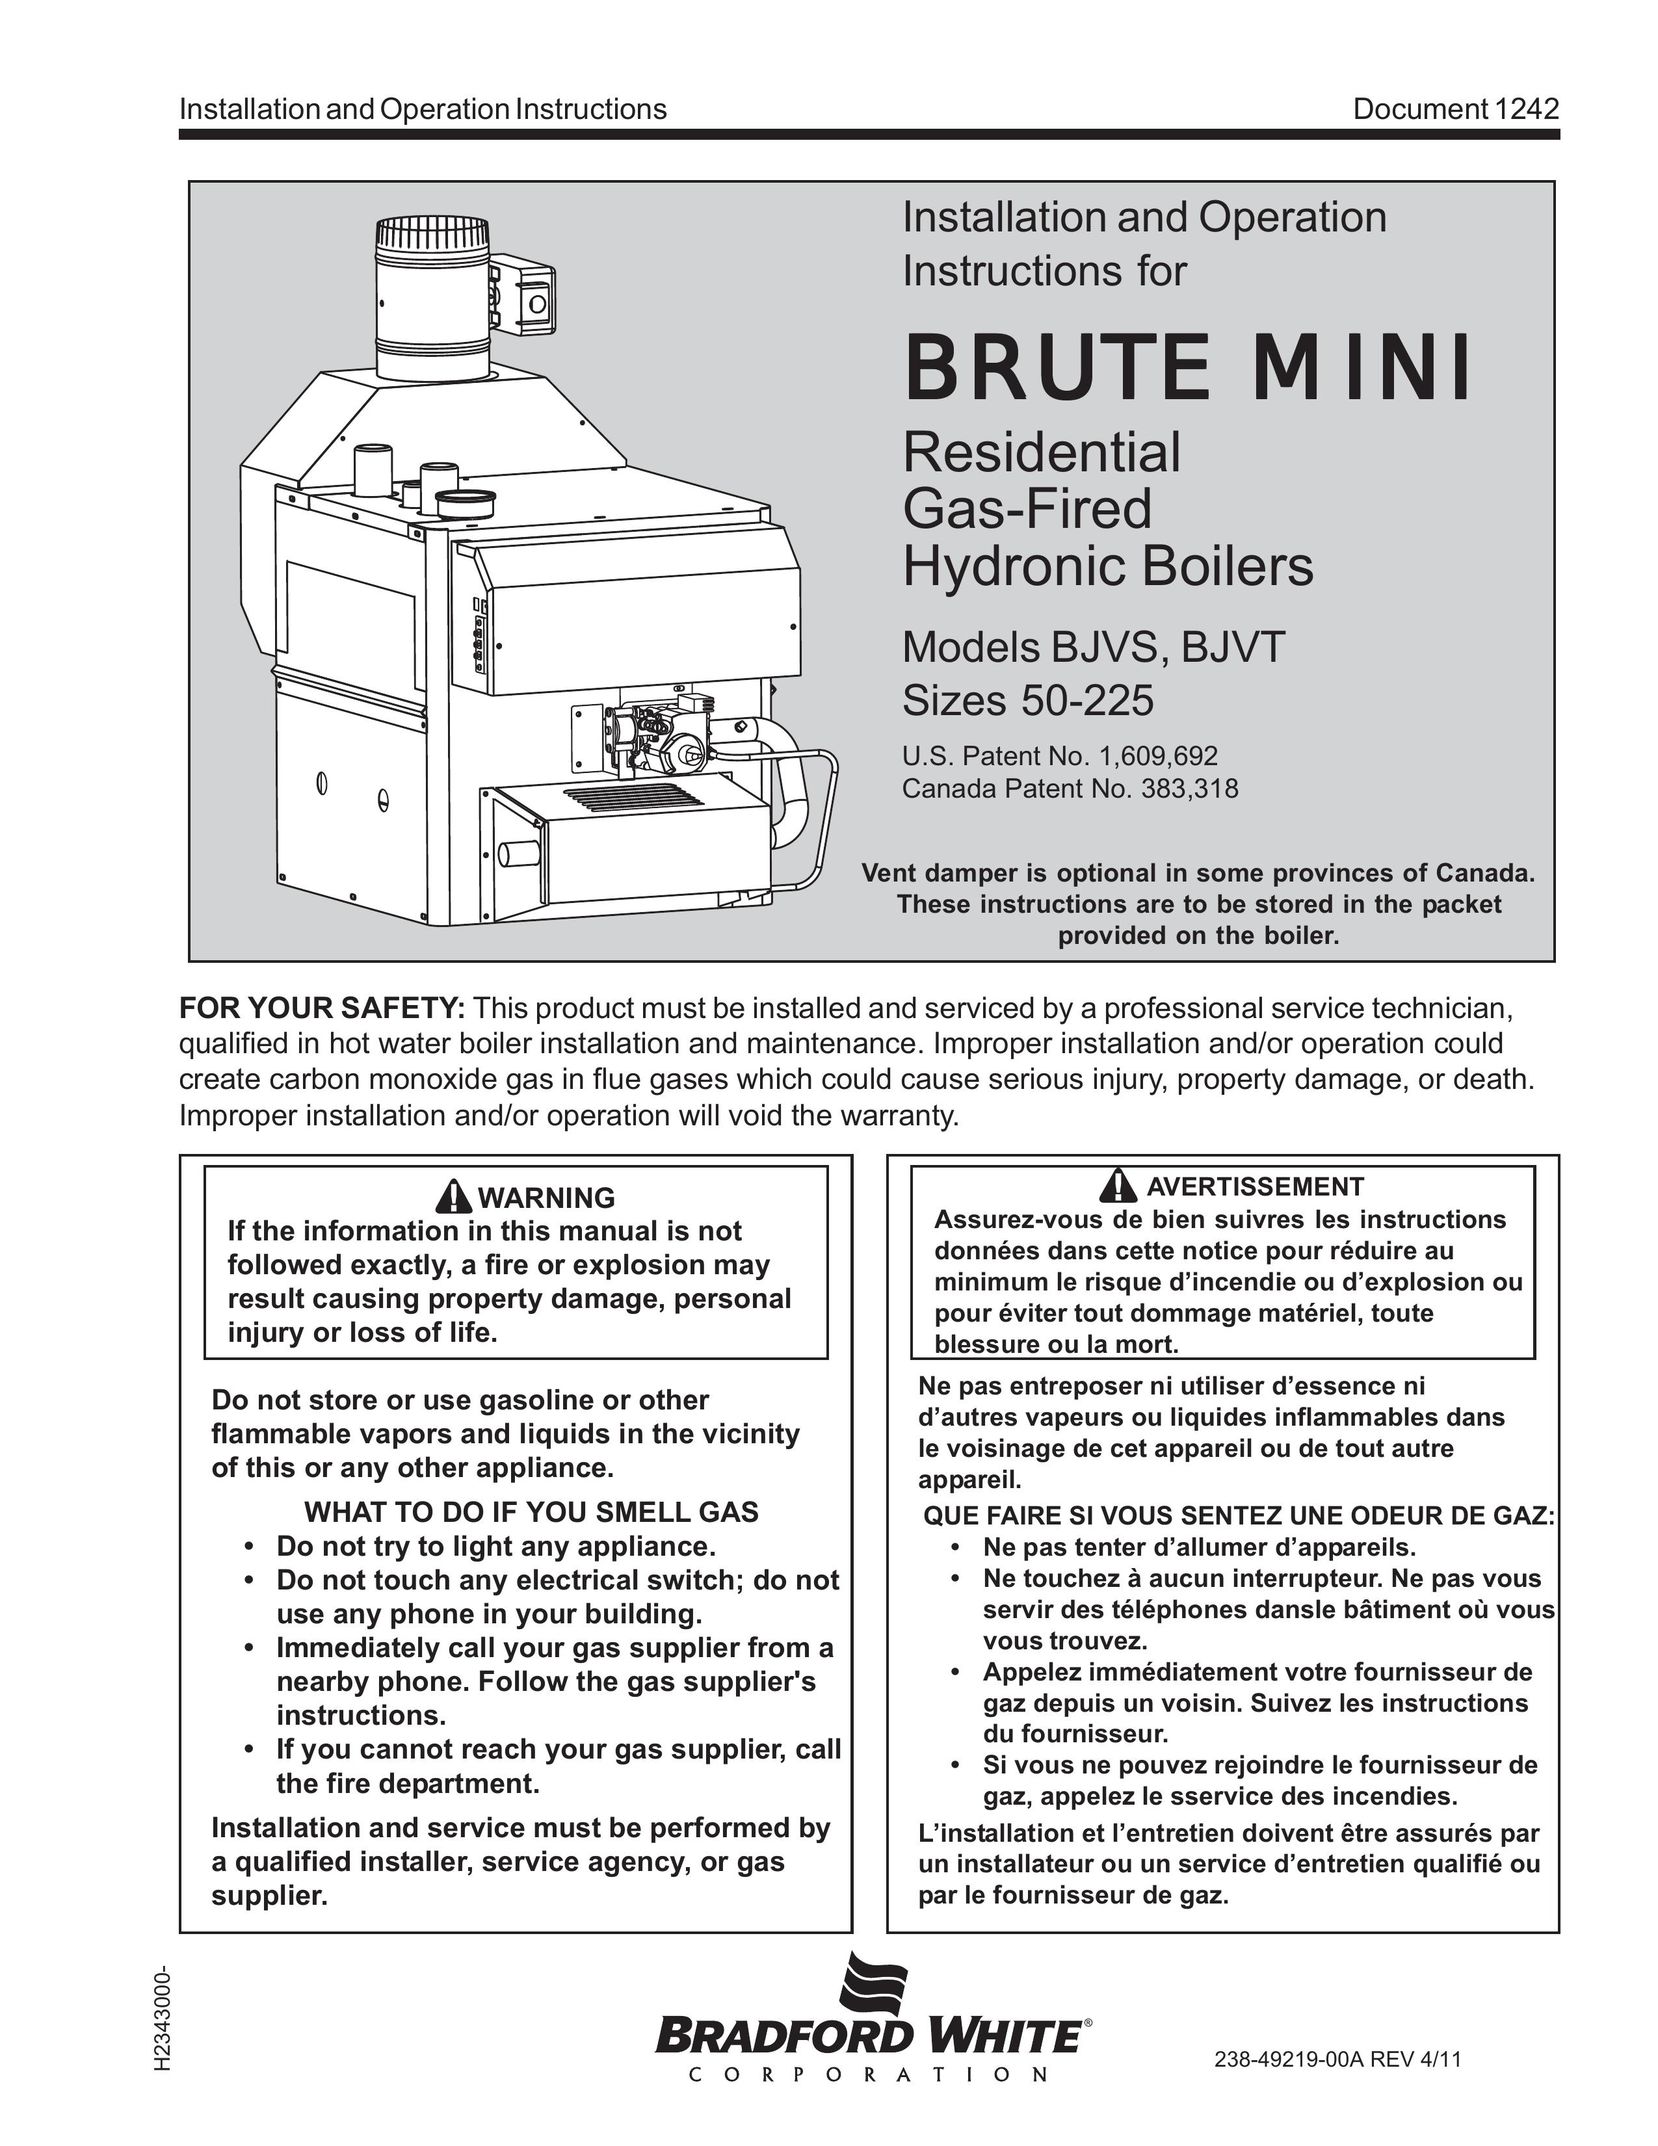 Bradford-White Corp BJVT Boiler User Manual